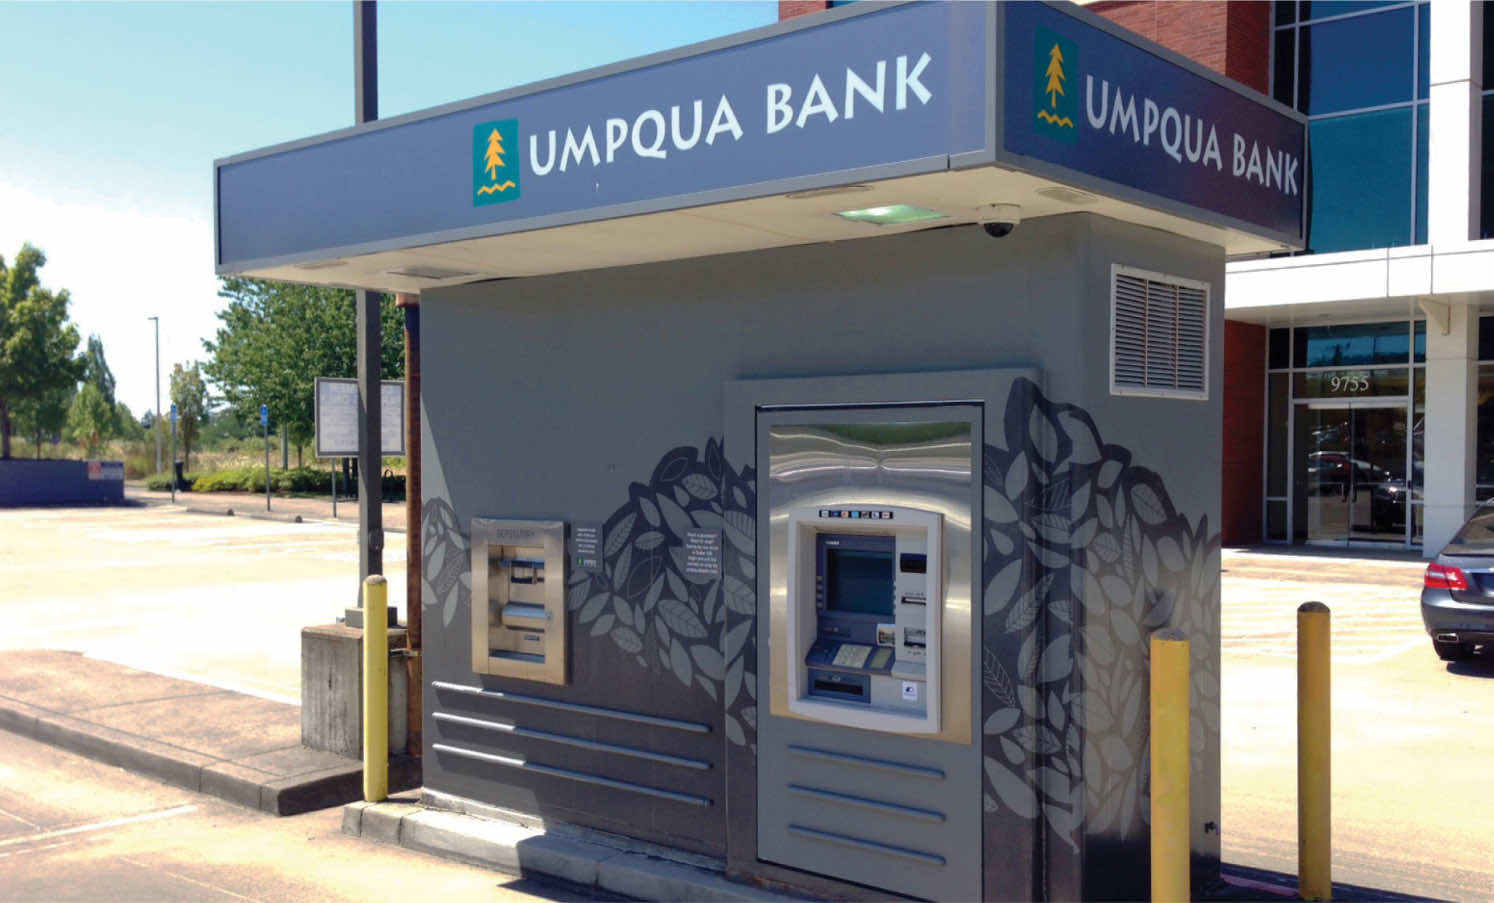 Umpqua Bank - ATM outside